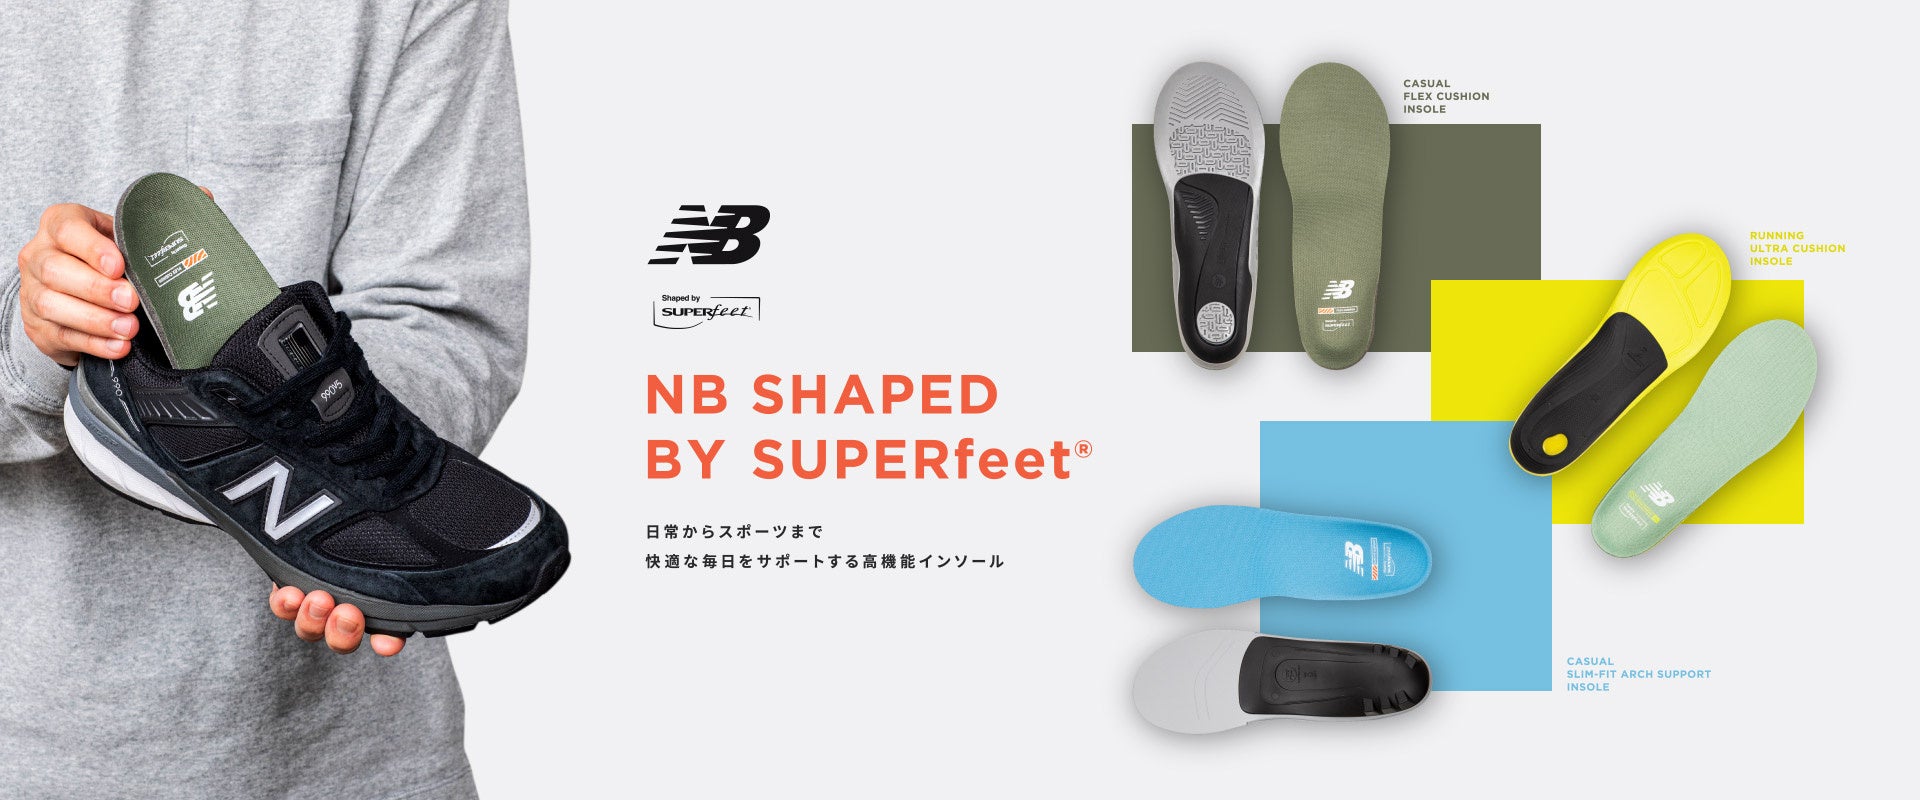 ニューバランス　日常からスポーツまで快適な毎日をサポートする 高機能インソール 「NB SHAPED BY SUPERfeet®」オフィシャルストア全店舗で販売開始